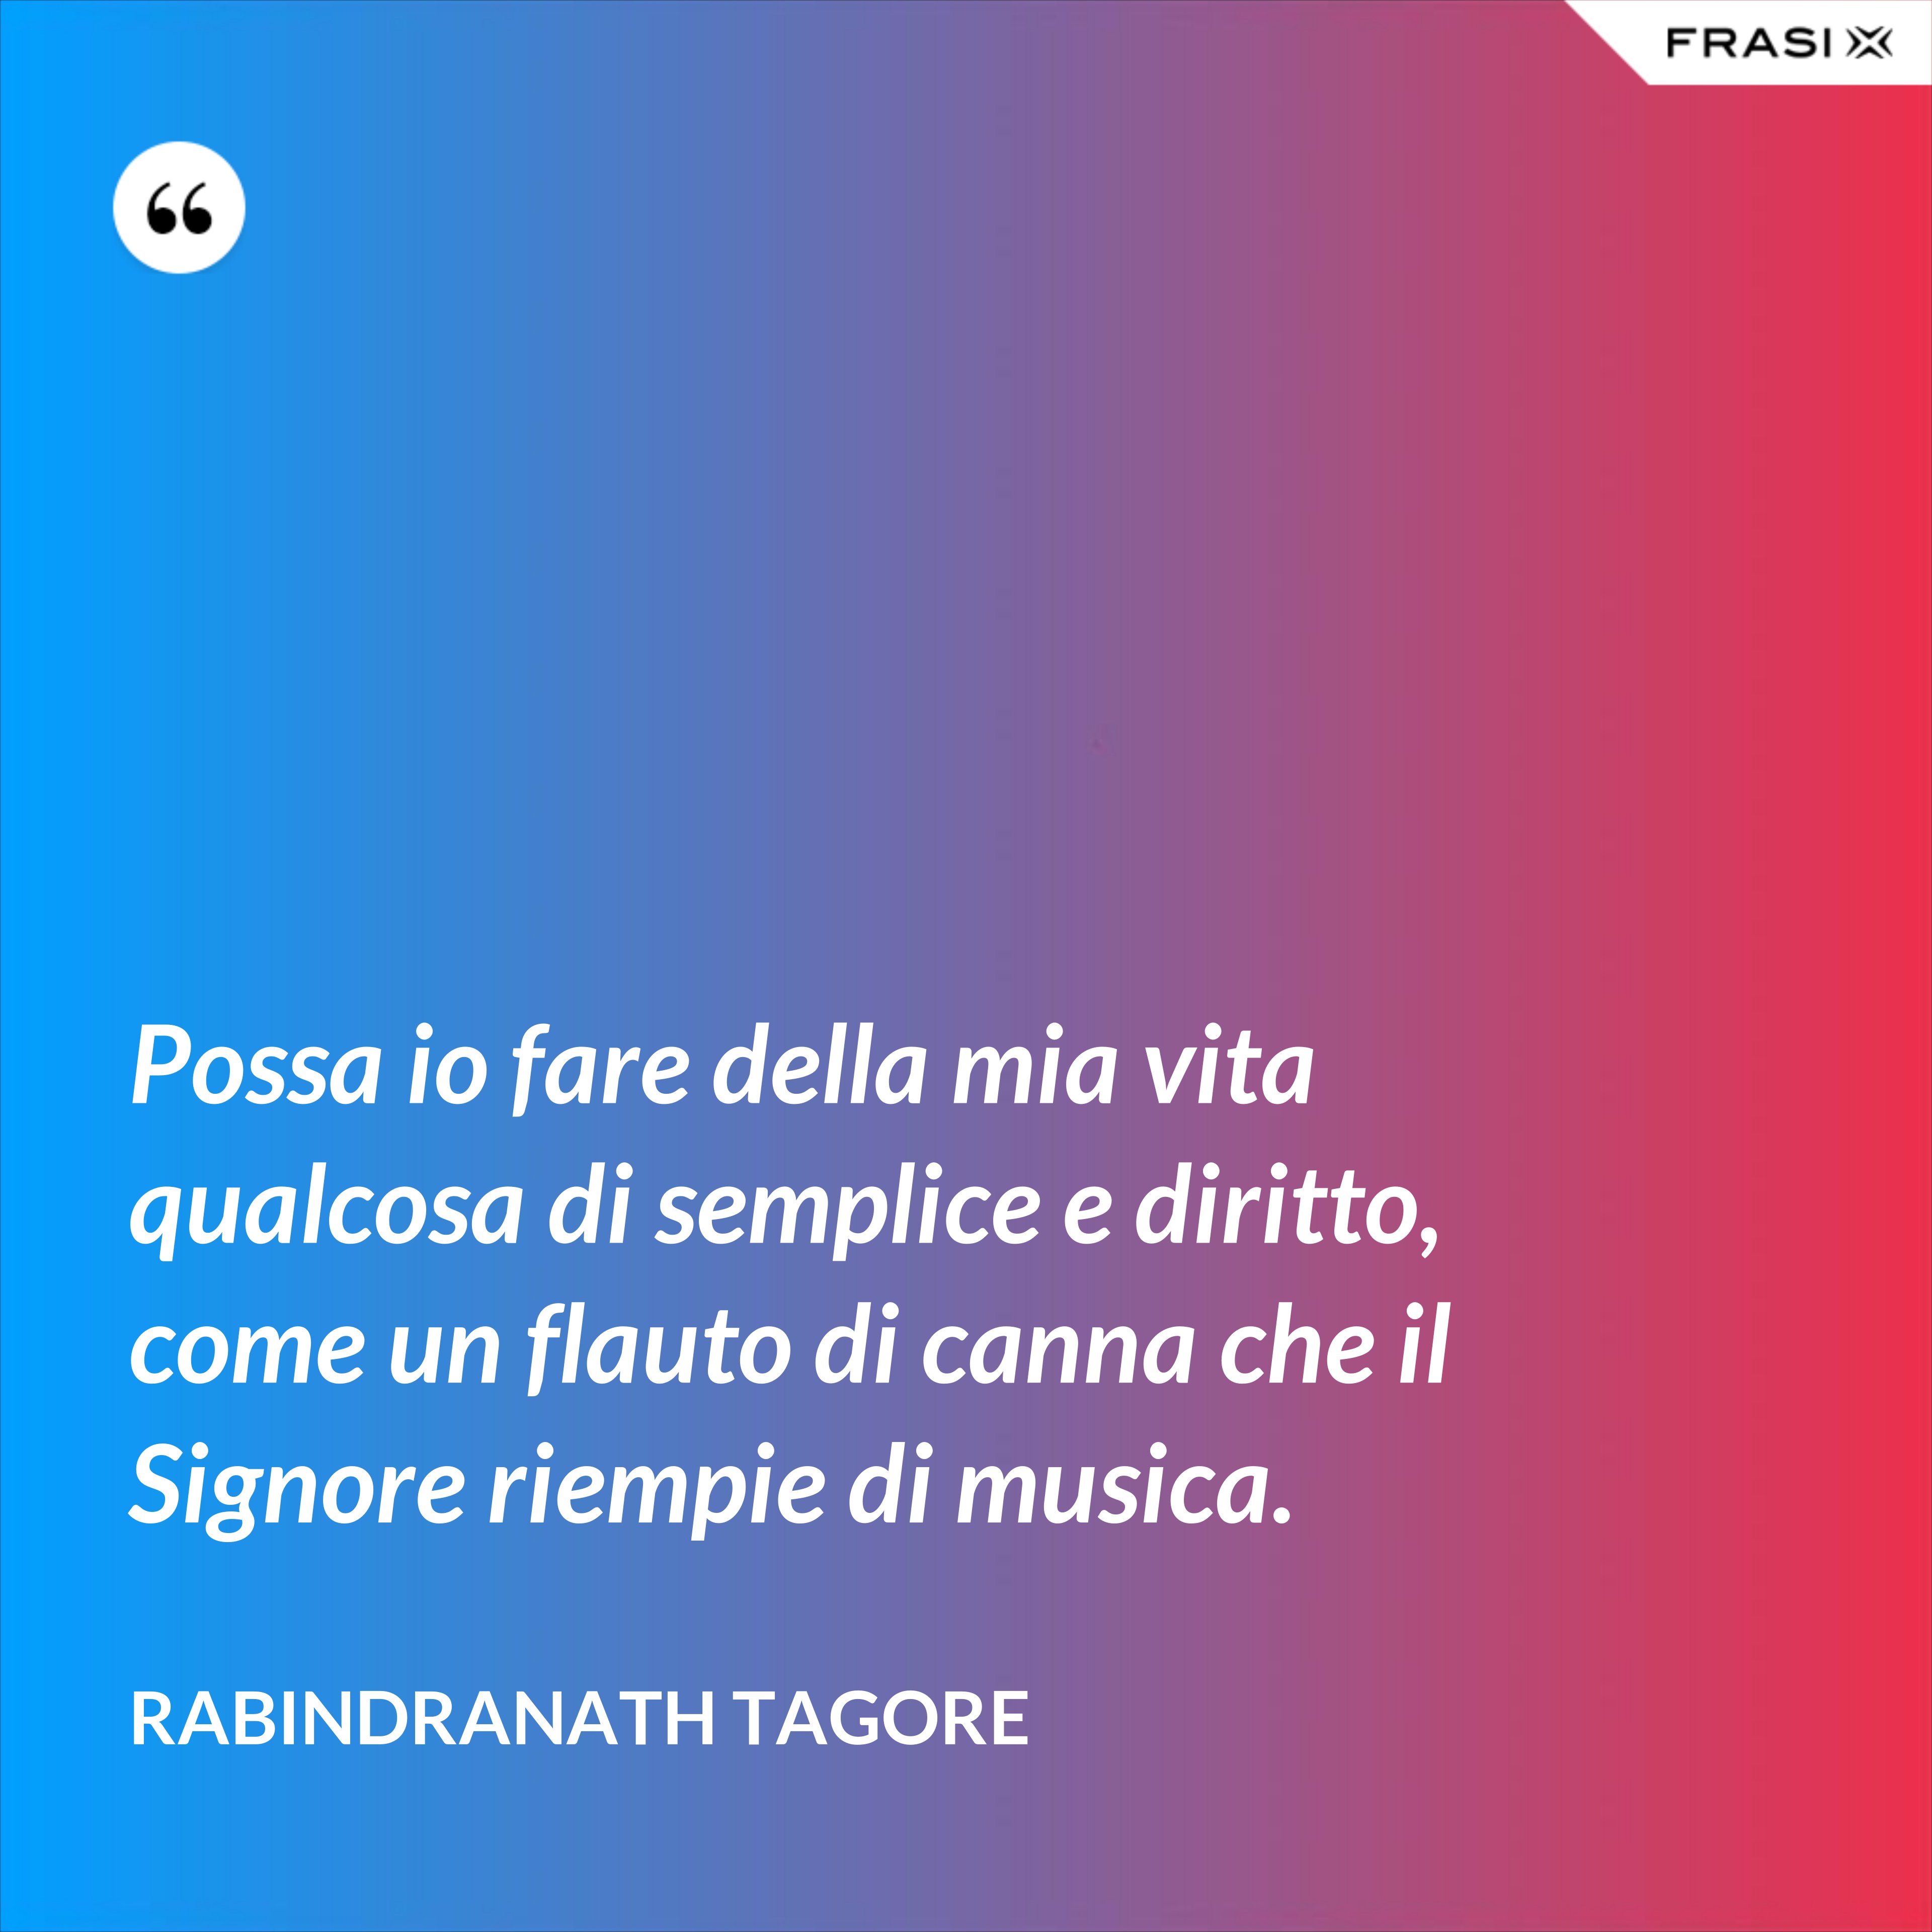 Possa io fare della mia vita qualcosa di semplice e diritto, come un flauto di canna che il Signore riempie di musica. - Rabindranath Tagore